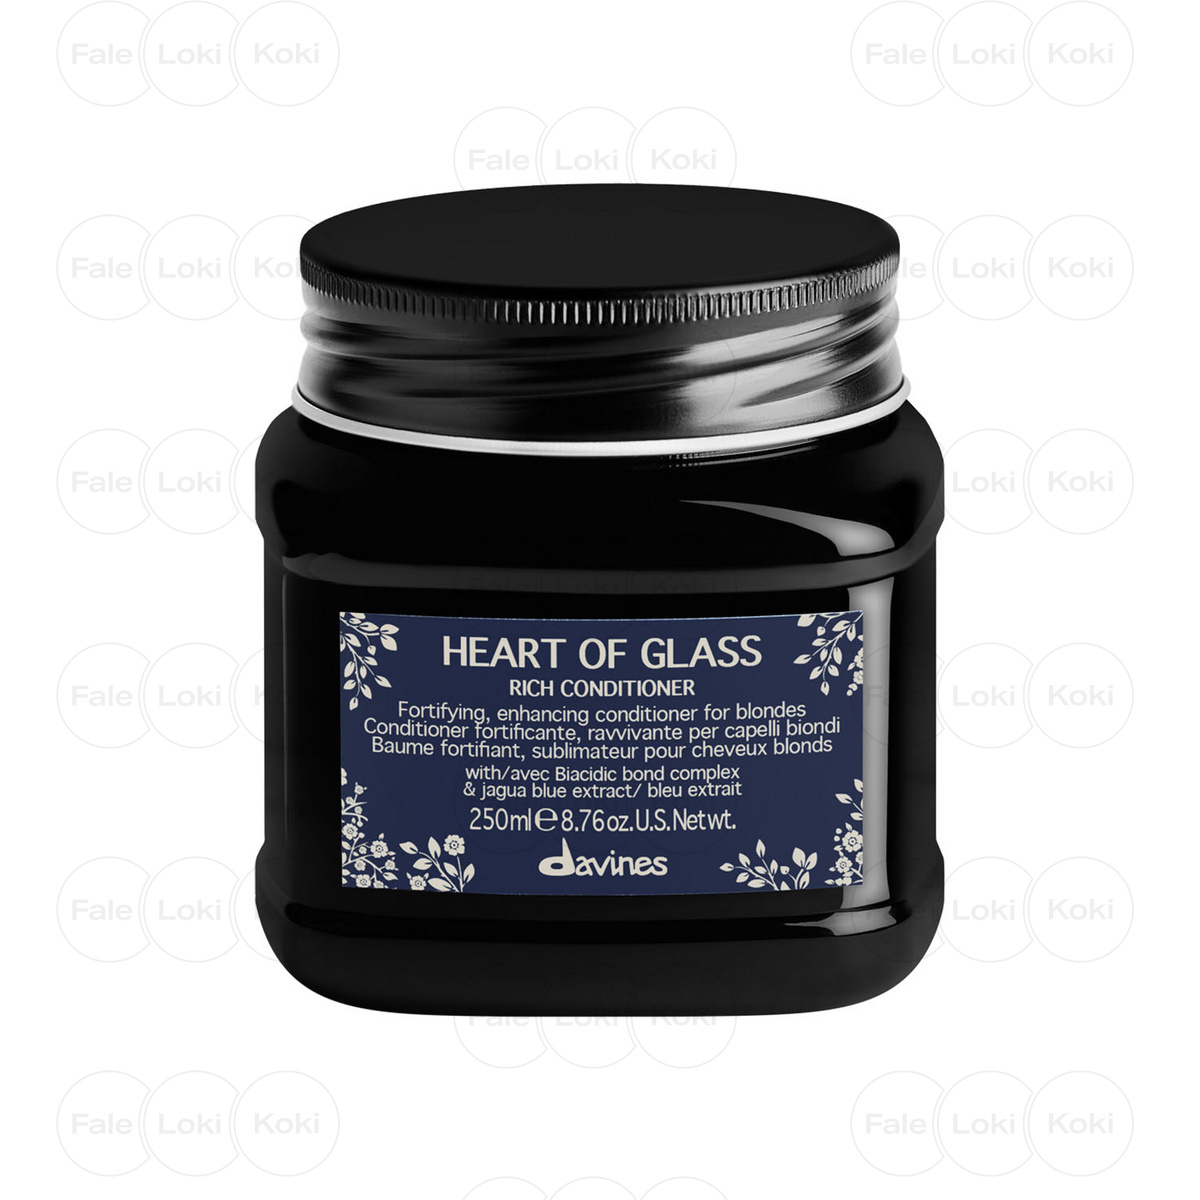 DAVINES HEART OF GLASS odżywka do włosów blond Rich Conditioner 250 ml